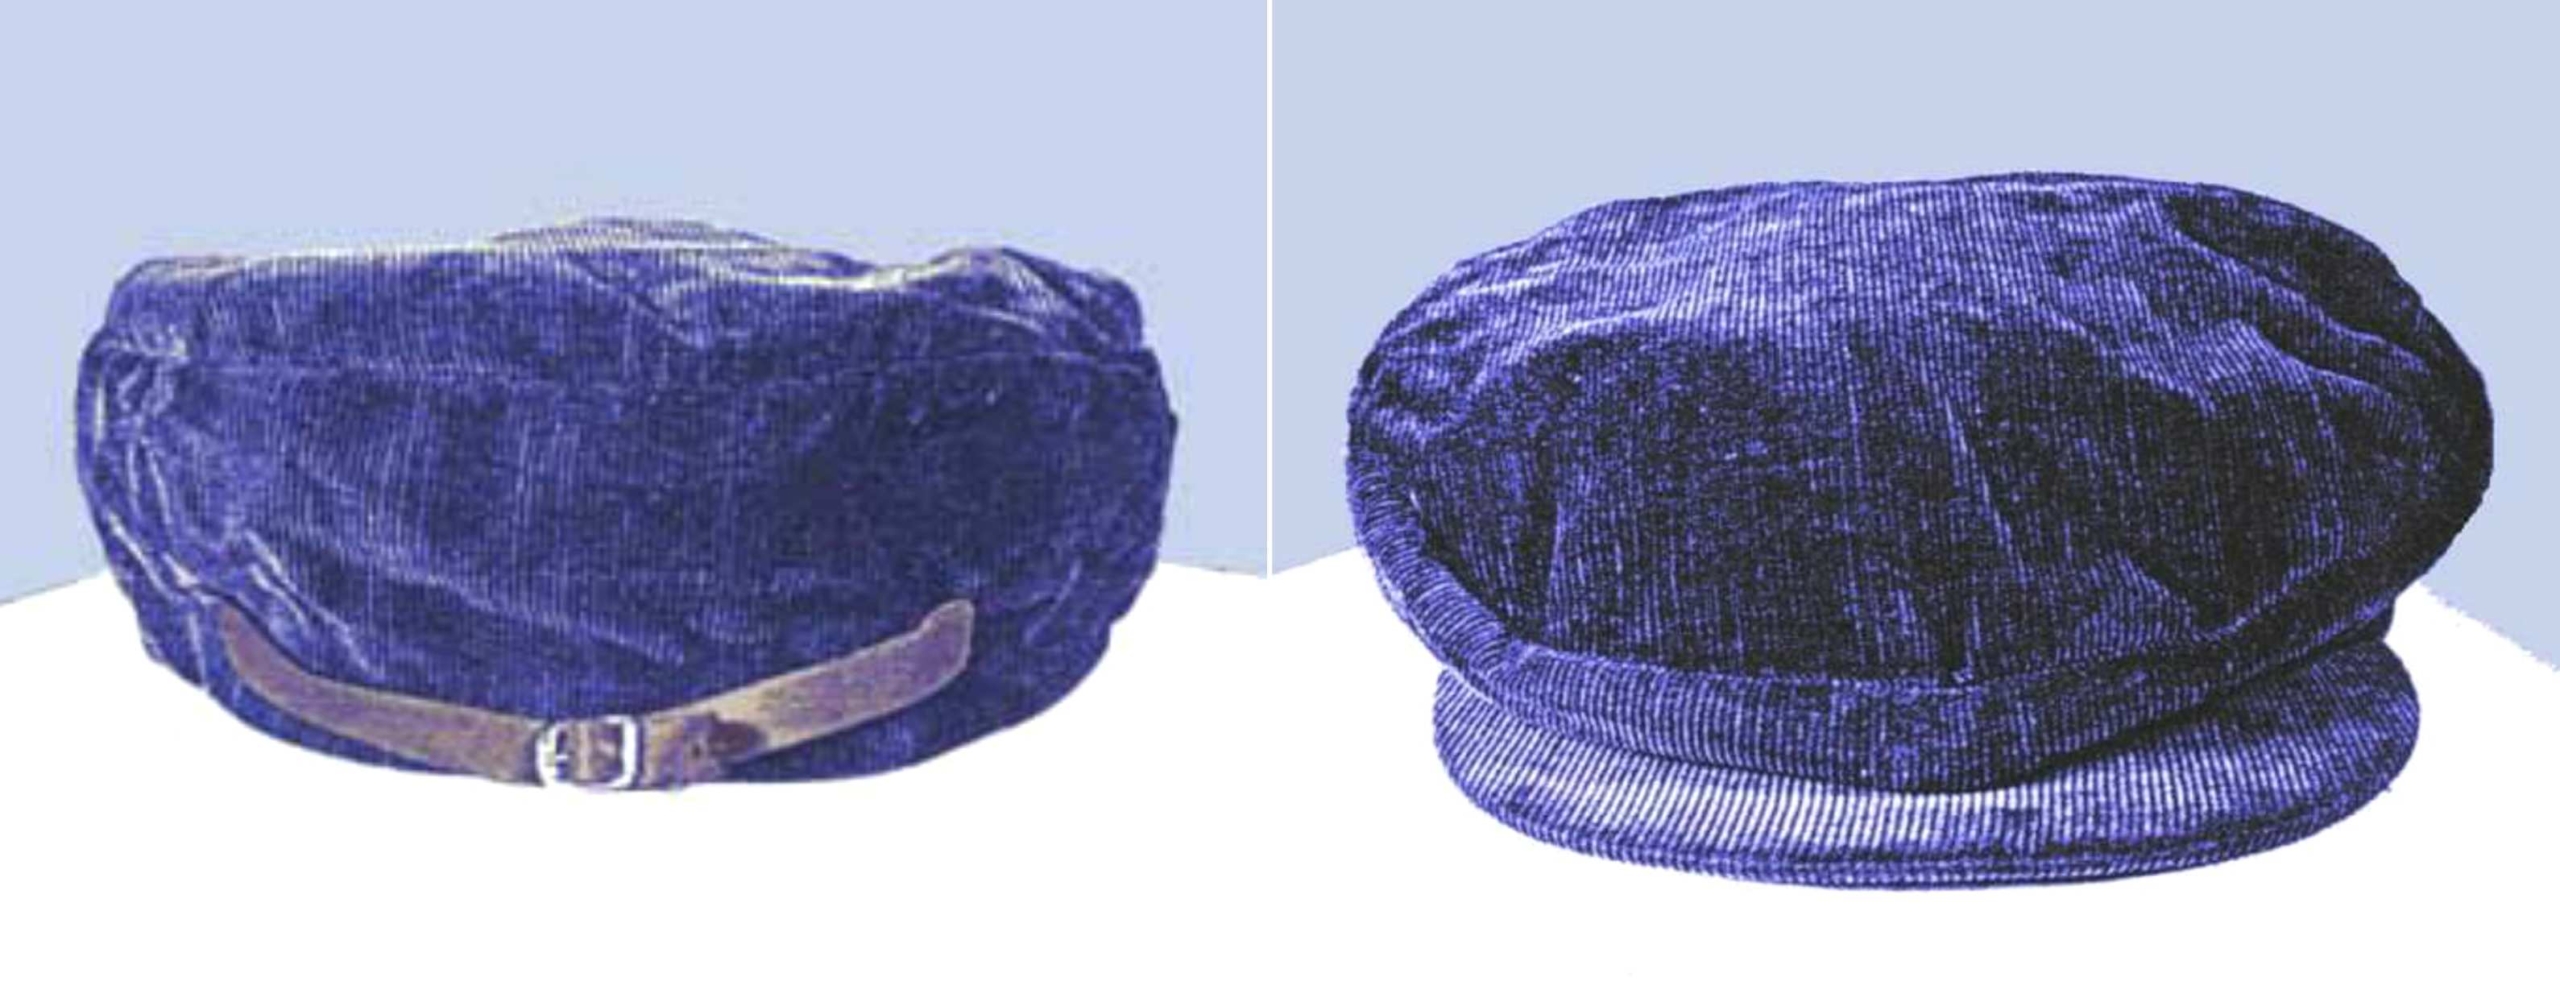 หมวกผ้าลูกฟูกสีน้ำเงินที่พบในที่เกิดเหตุ © เครดิตรูปภาพ: Americasunknownchild